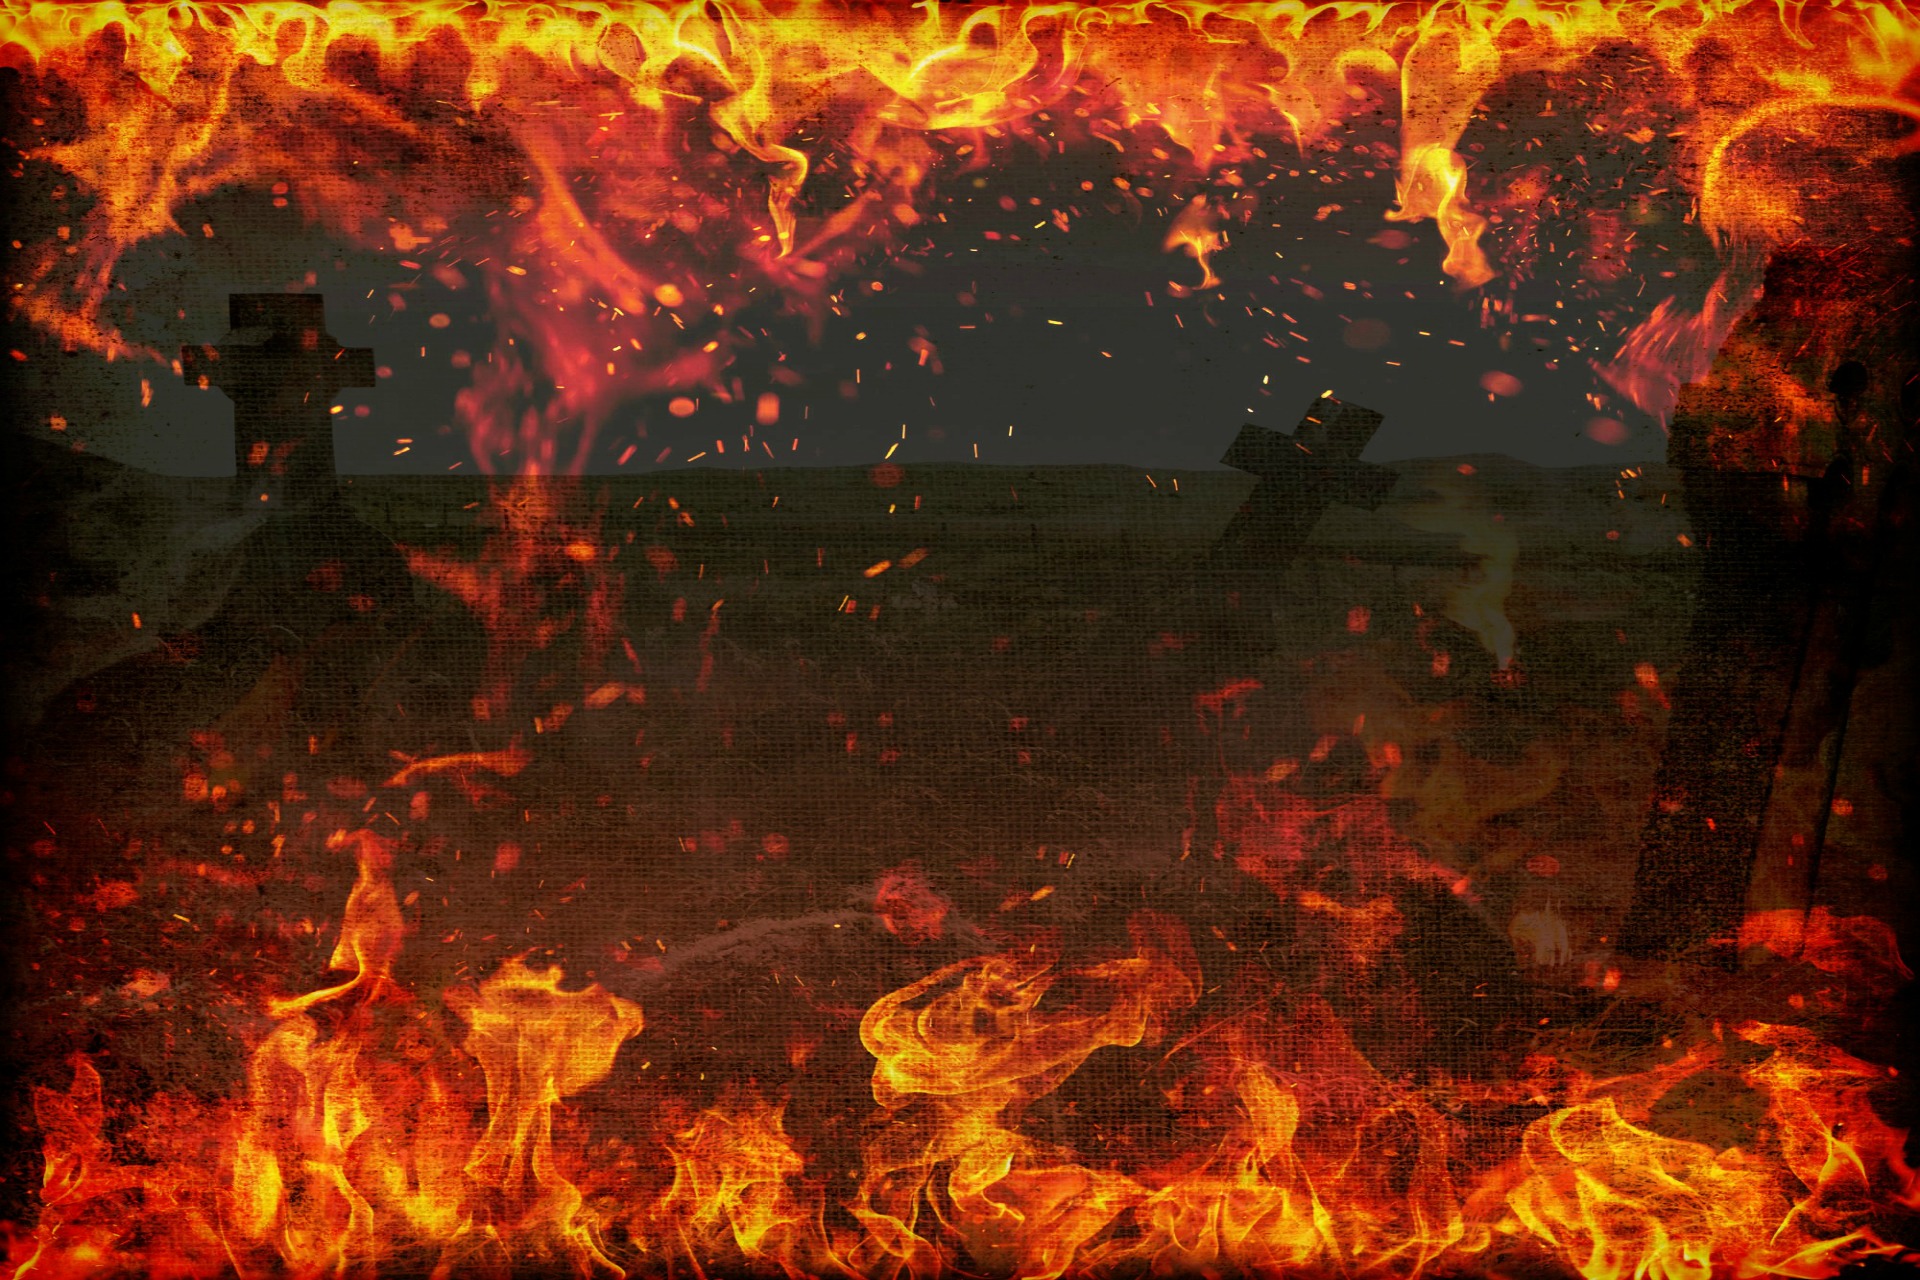 Firey Death by GothKitten